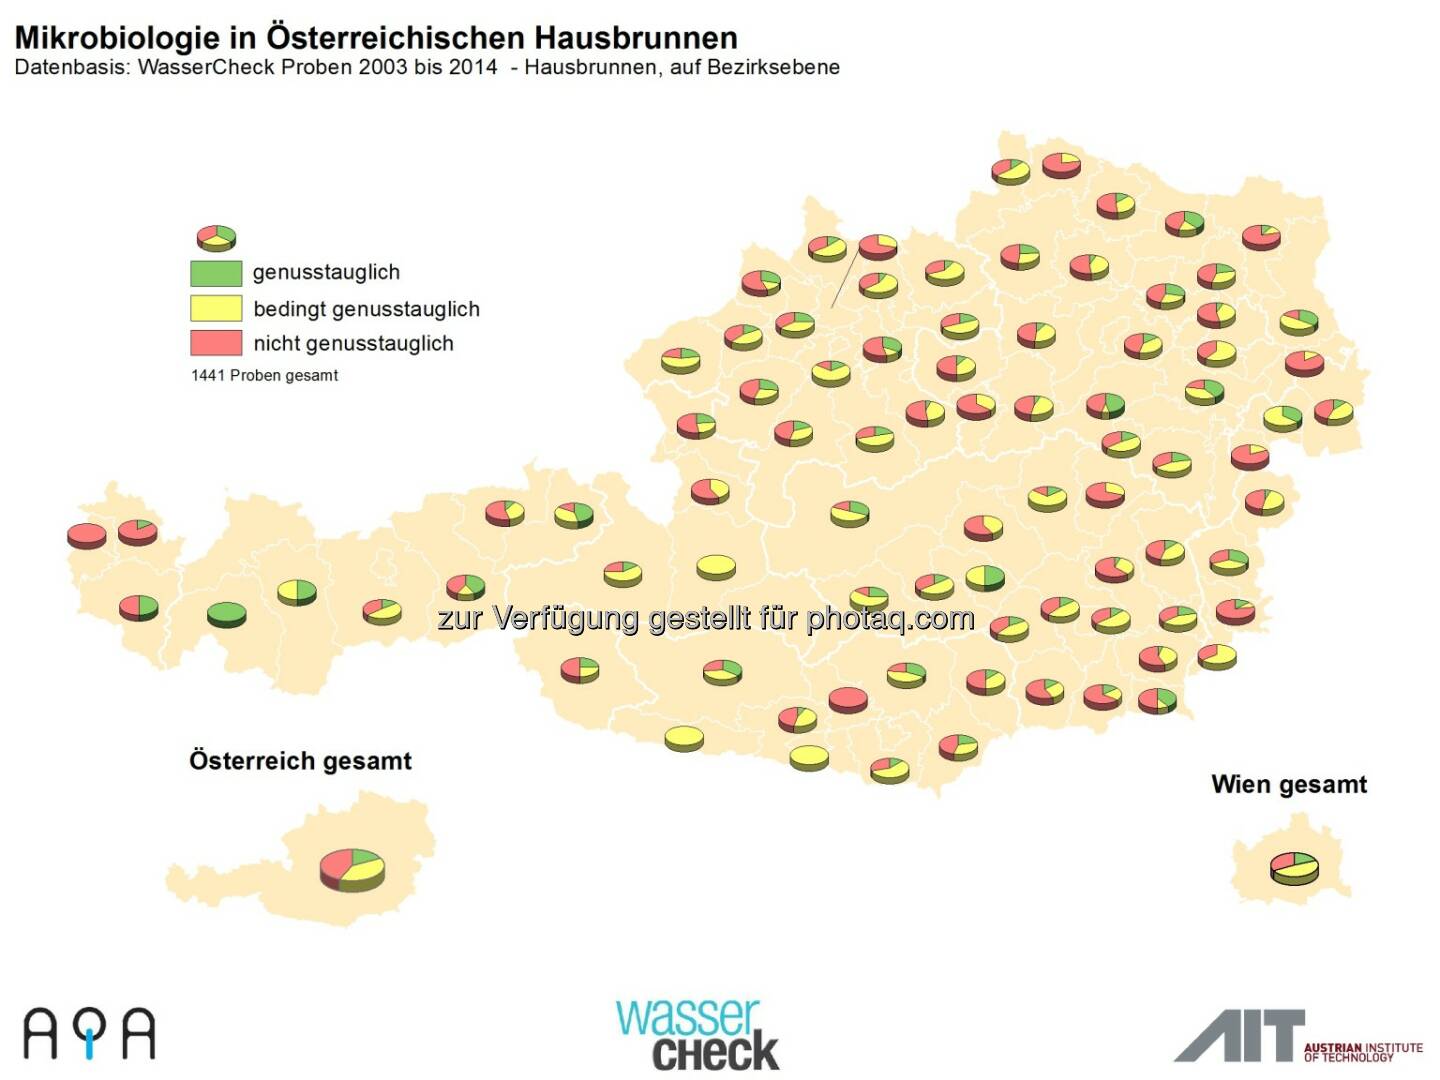 AQA GmbH: Zum Weltwassertag am 22.3.: Trinkwasser-Topqualität in Österreich ist nicht selbstverständlich: Hausbrunnencheck